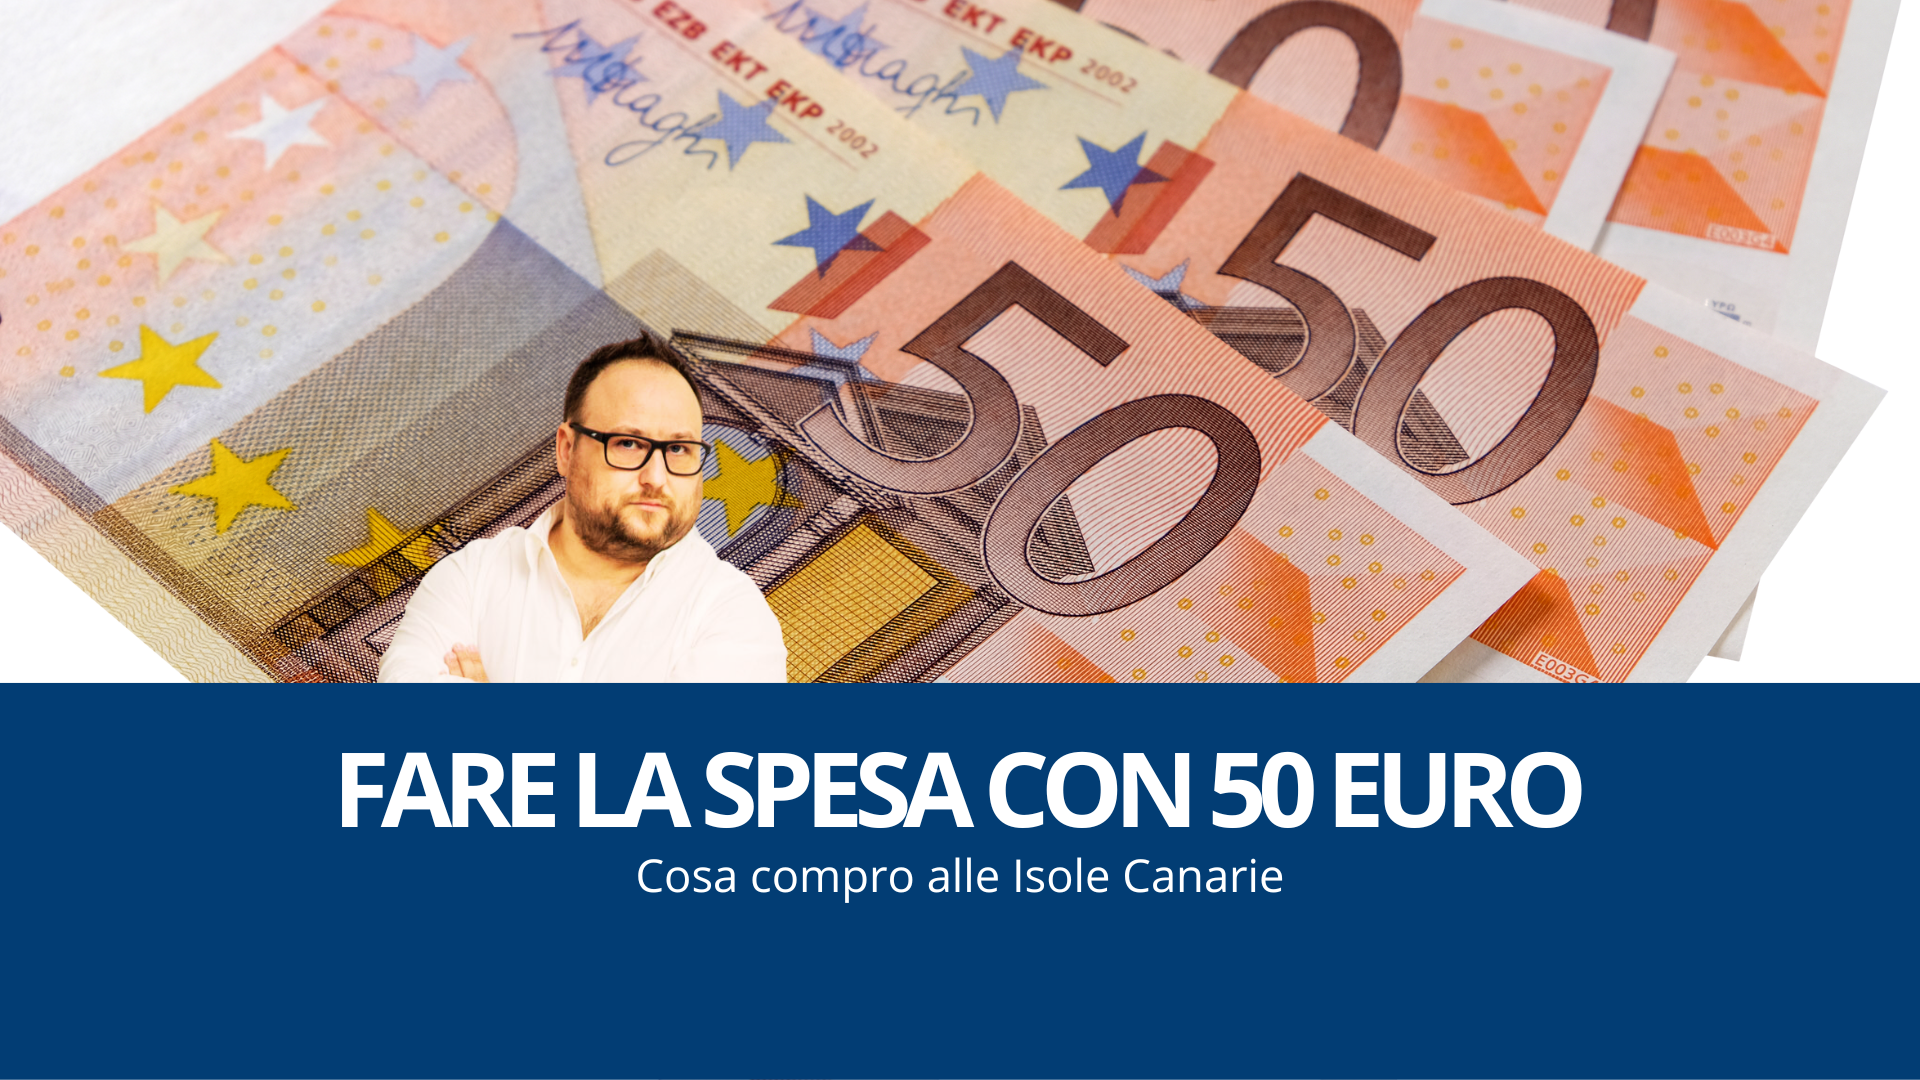 FARE LA SPESA CON 50 EURO ALLE CANARIE, ECCO COSA HO COMPRATO, alexlabbate.com trasferirsi alle Canarie